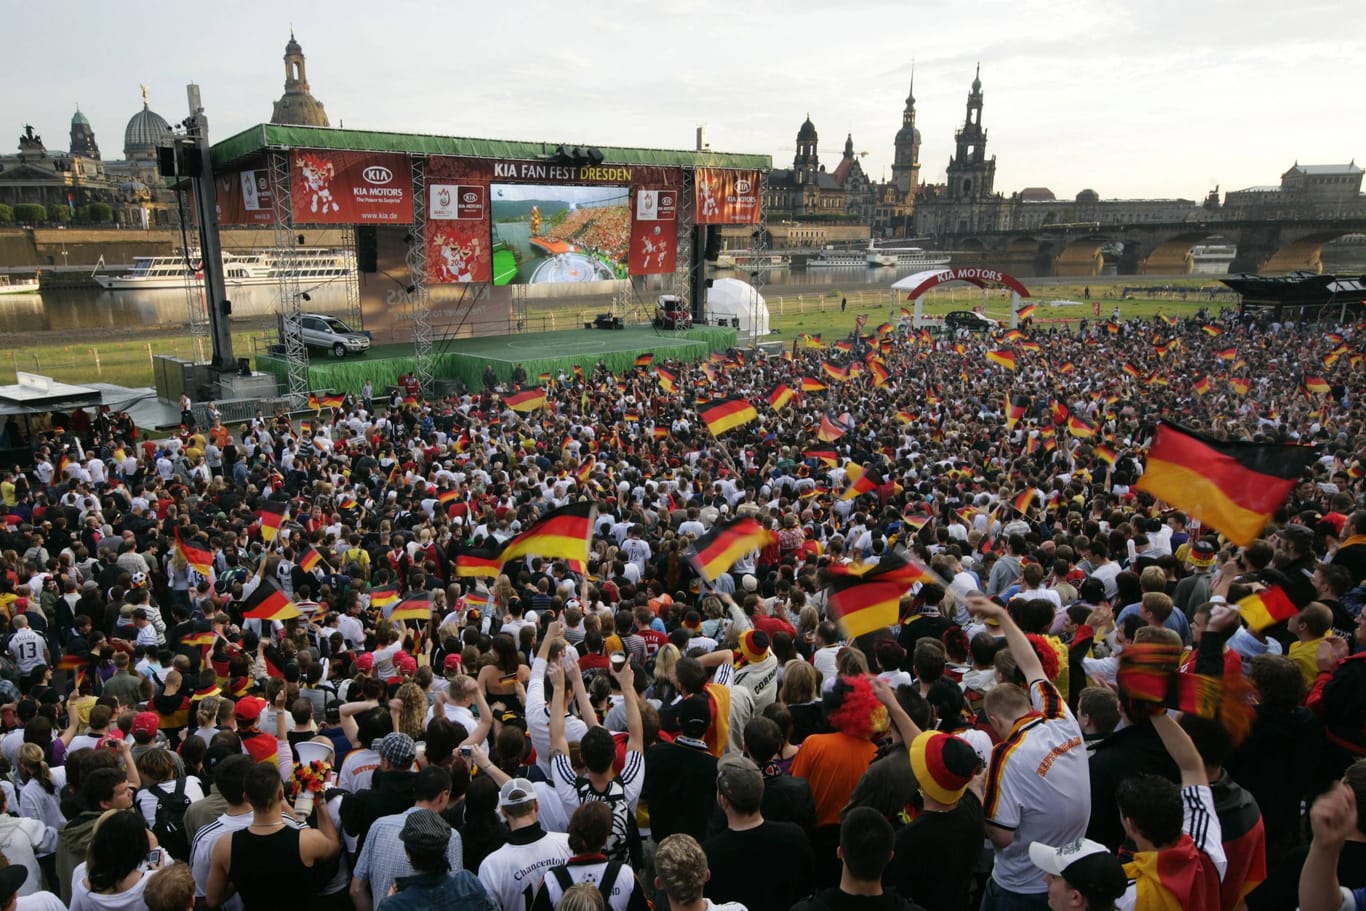 Bei der EM 2008 wurde Public Viewing am Dresdner Elbufer organisiert: Die Fans fieberten beim Halbfinalspiel gegen die Türkei mit.